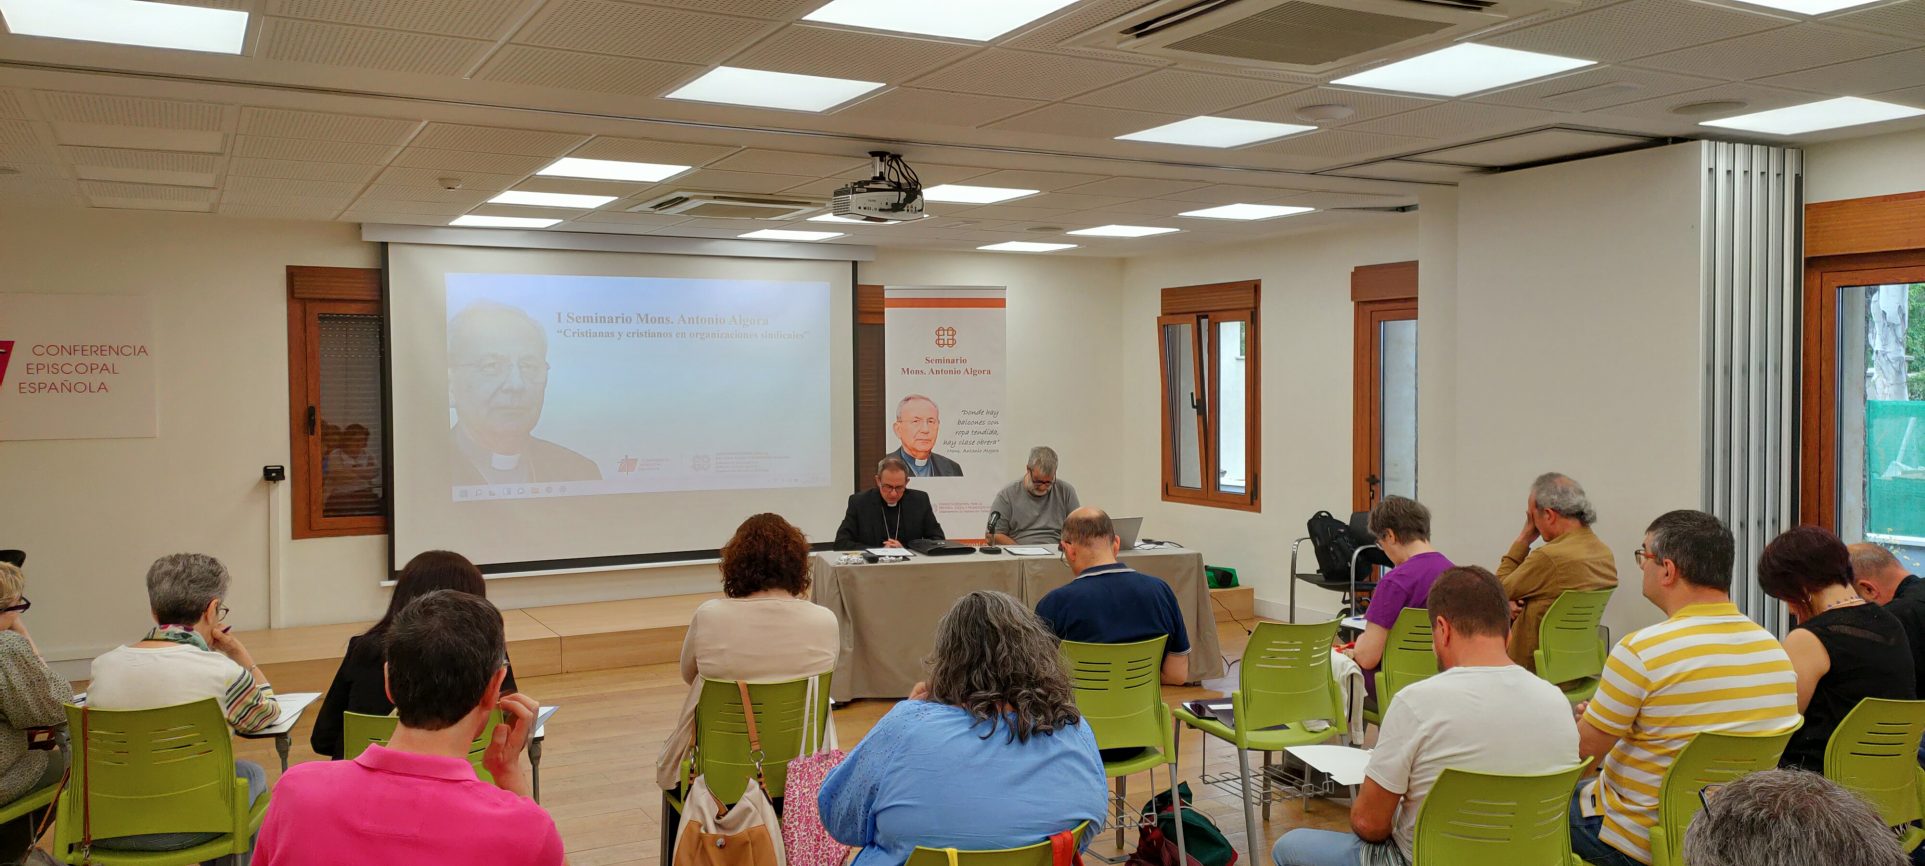 El seminario Antonio Algora aborda los desafíos de la Pastoral del Trabajo